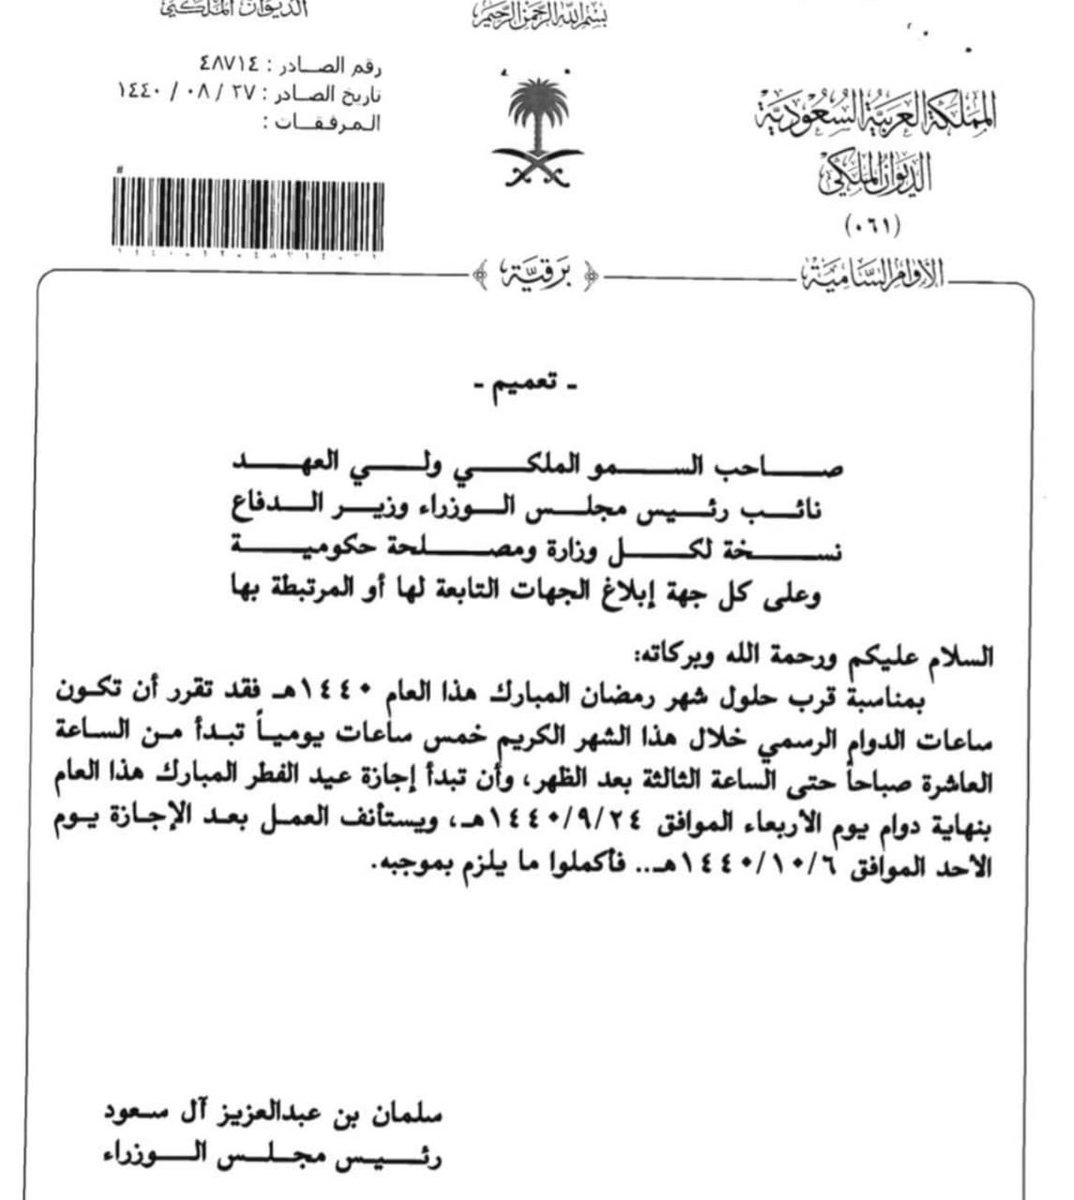 عدالة السعودية On Twitter أمر سام بتحديد ساعات الدوام الرسمي خلال شهر رمضان وتحديد موعد بداية إجازة عيد الفطر واستئناف العمل بعد الإجازة